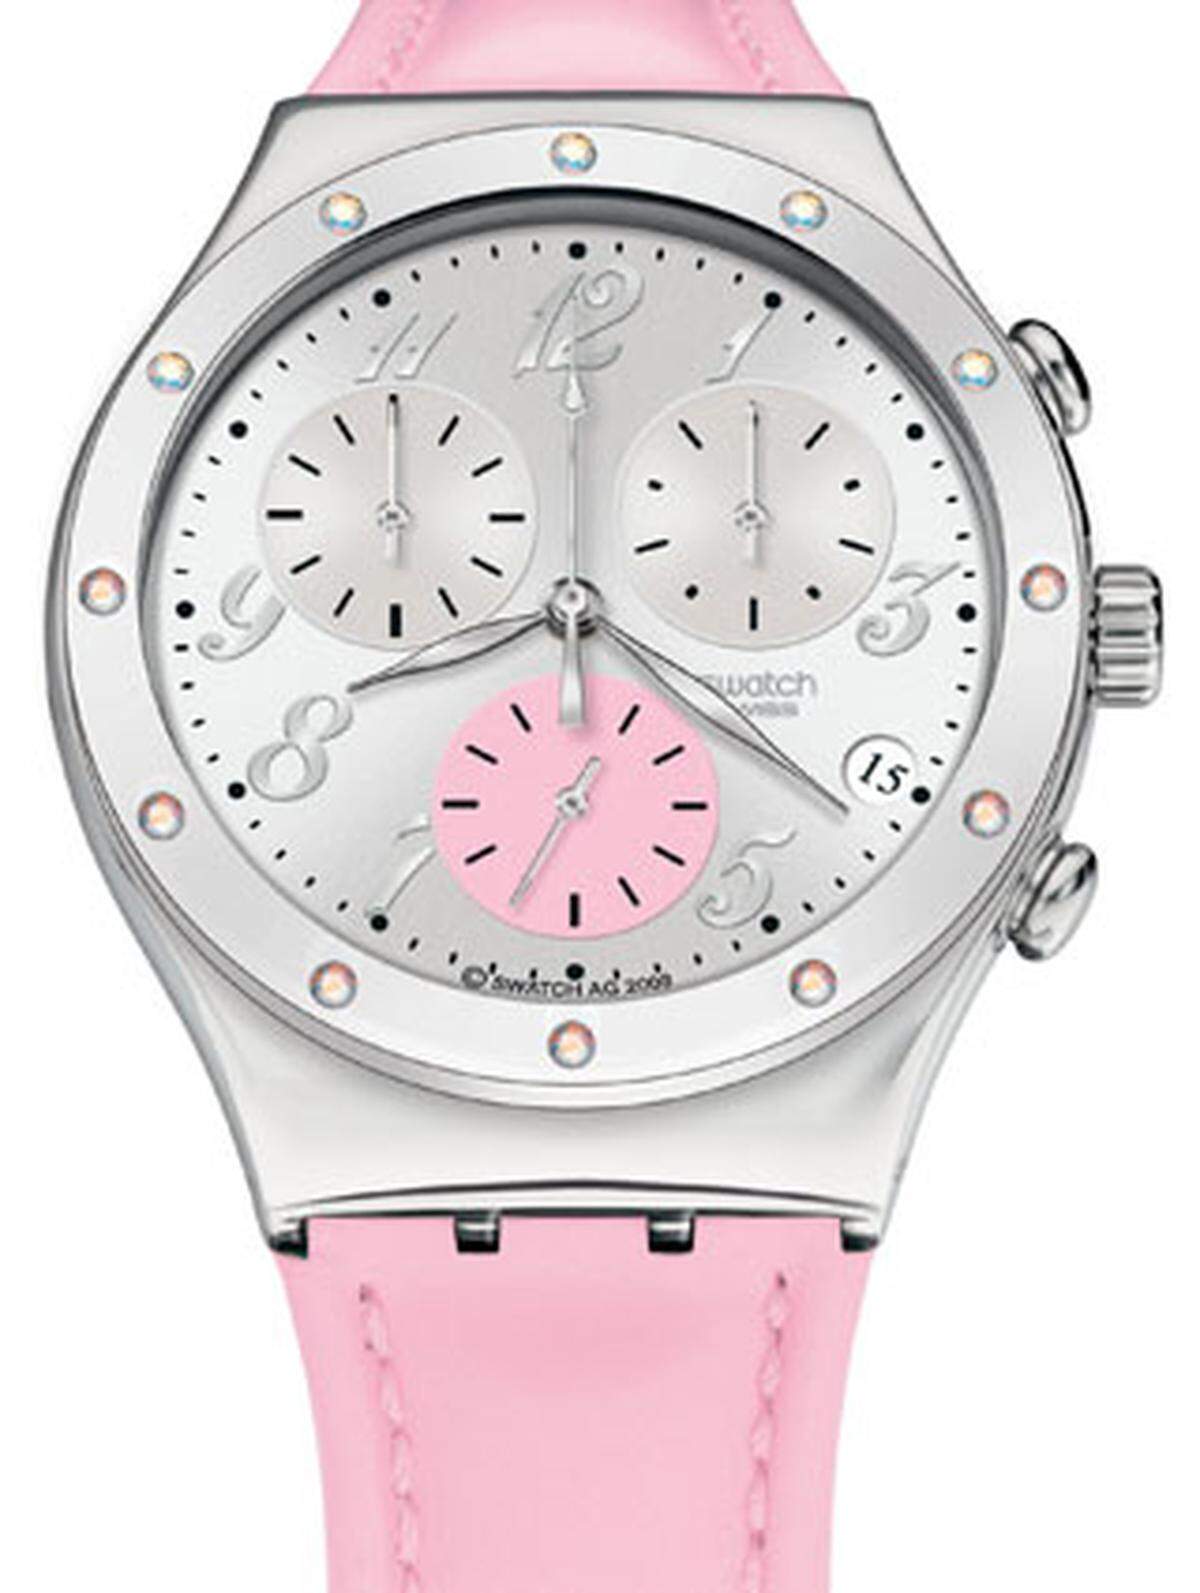 Der Irony Chrono "Time in Rose" setzt ganz auf die Farbe Rosa. Das rosa Lederband mit rosa Naht greift die Farbe des Hilfszifferblattes mit der kleinen ­Sekunde auf. Die Lünette ist mit zwölf weißen Aurora-Borealis-Kristallen geschmückt. 110 Euro